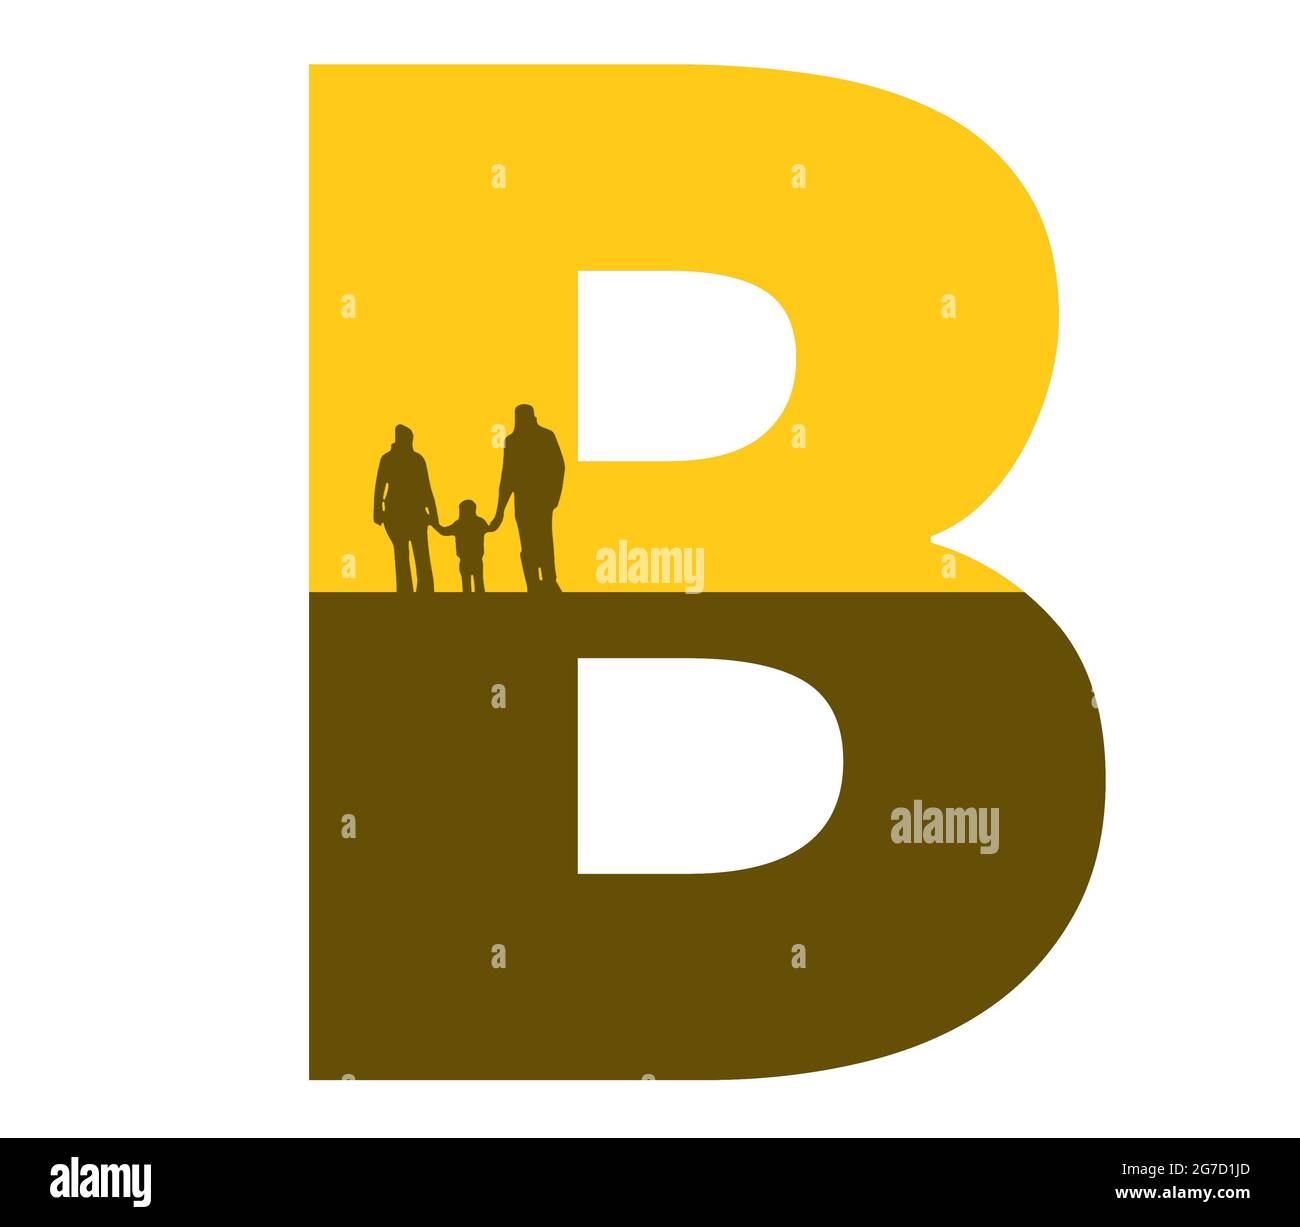 Lettre B de l'alphabet avec une silhouette de famille, de père, de mère et d'enfant, de couleur ocre et marron Banque D'Images